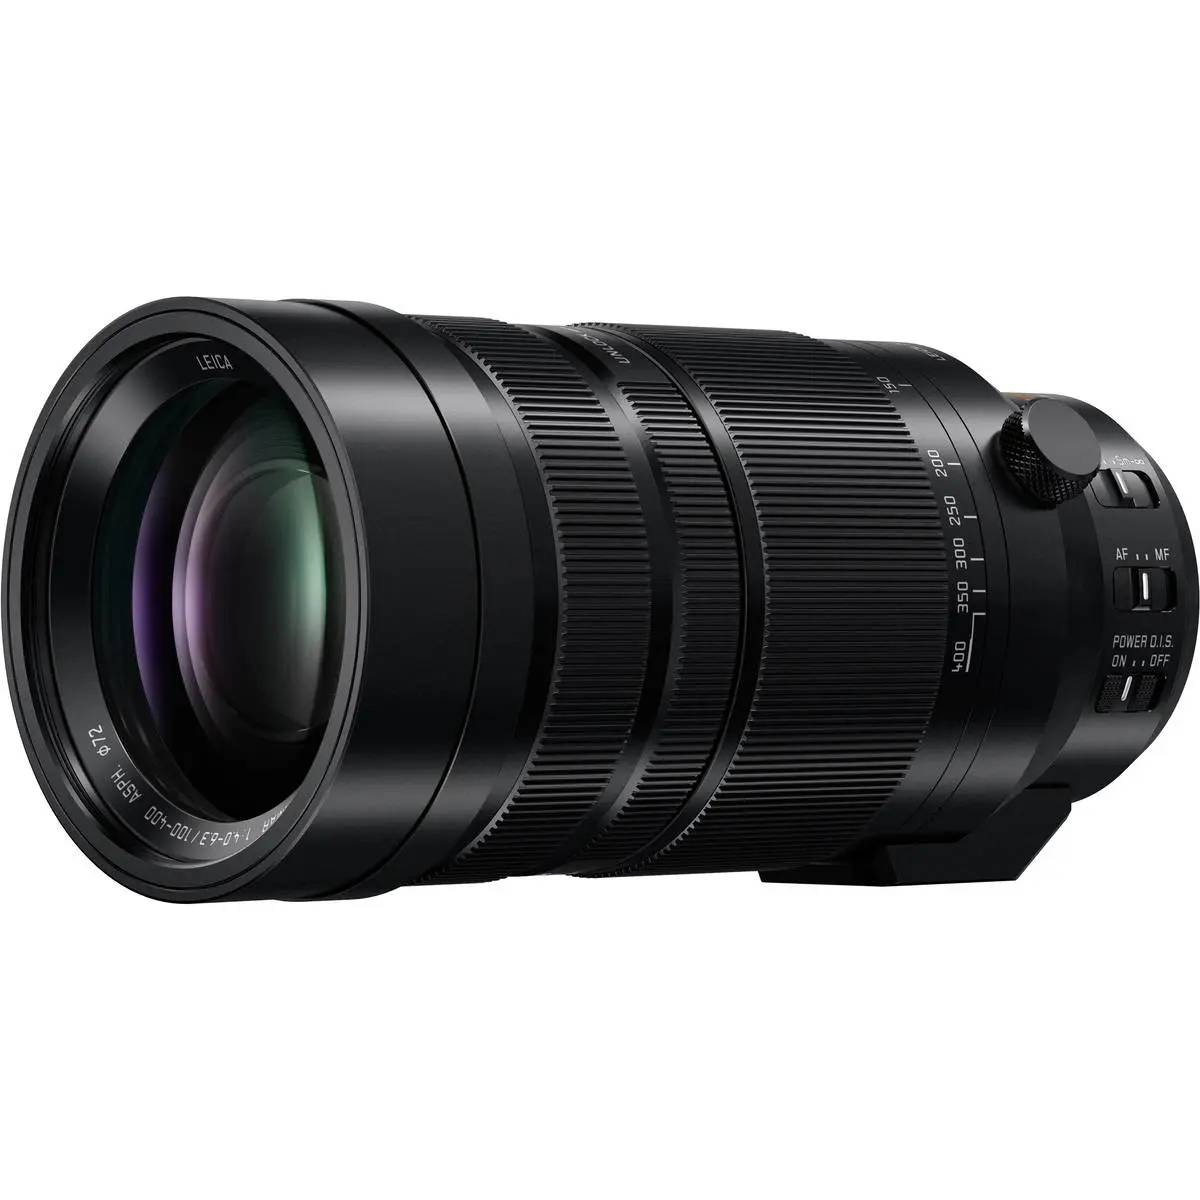 2. Panasonic DG V-Elmar 100-400mm F4.0-6.3 ASPH OIS Lens